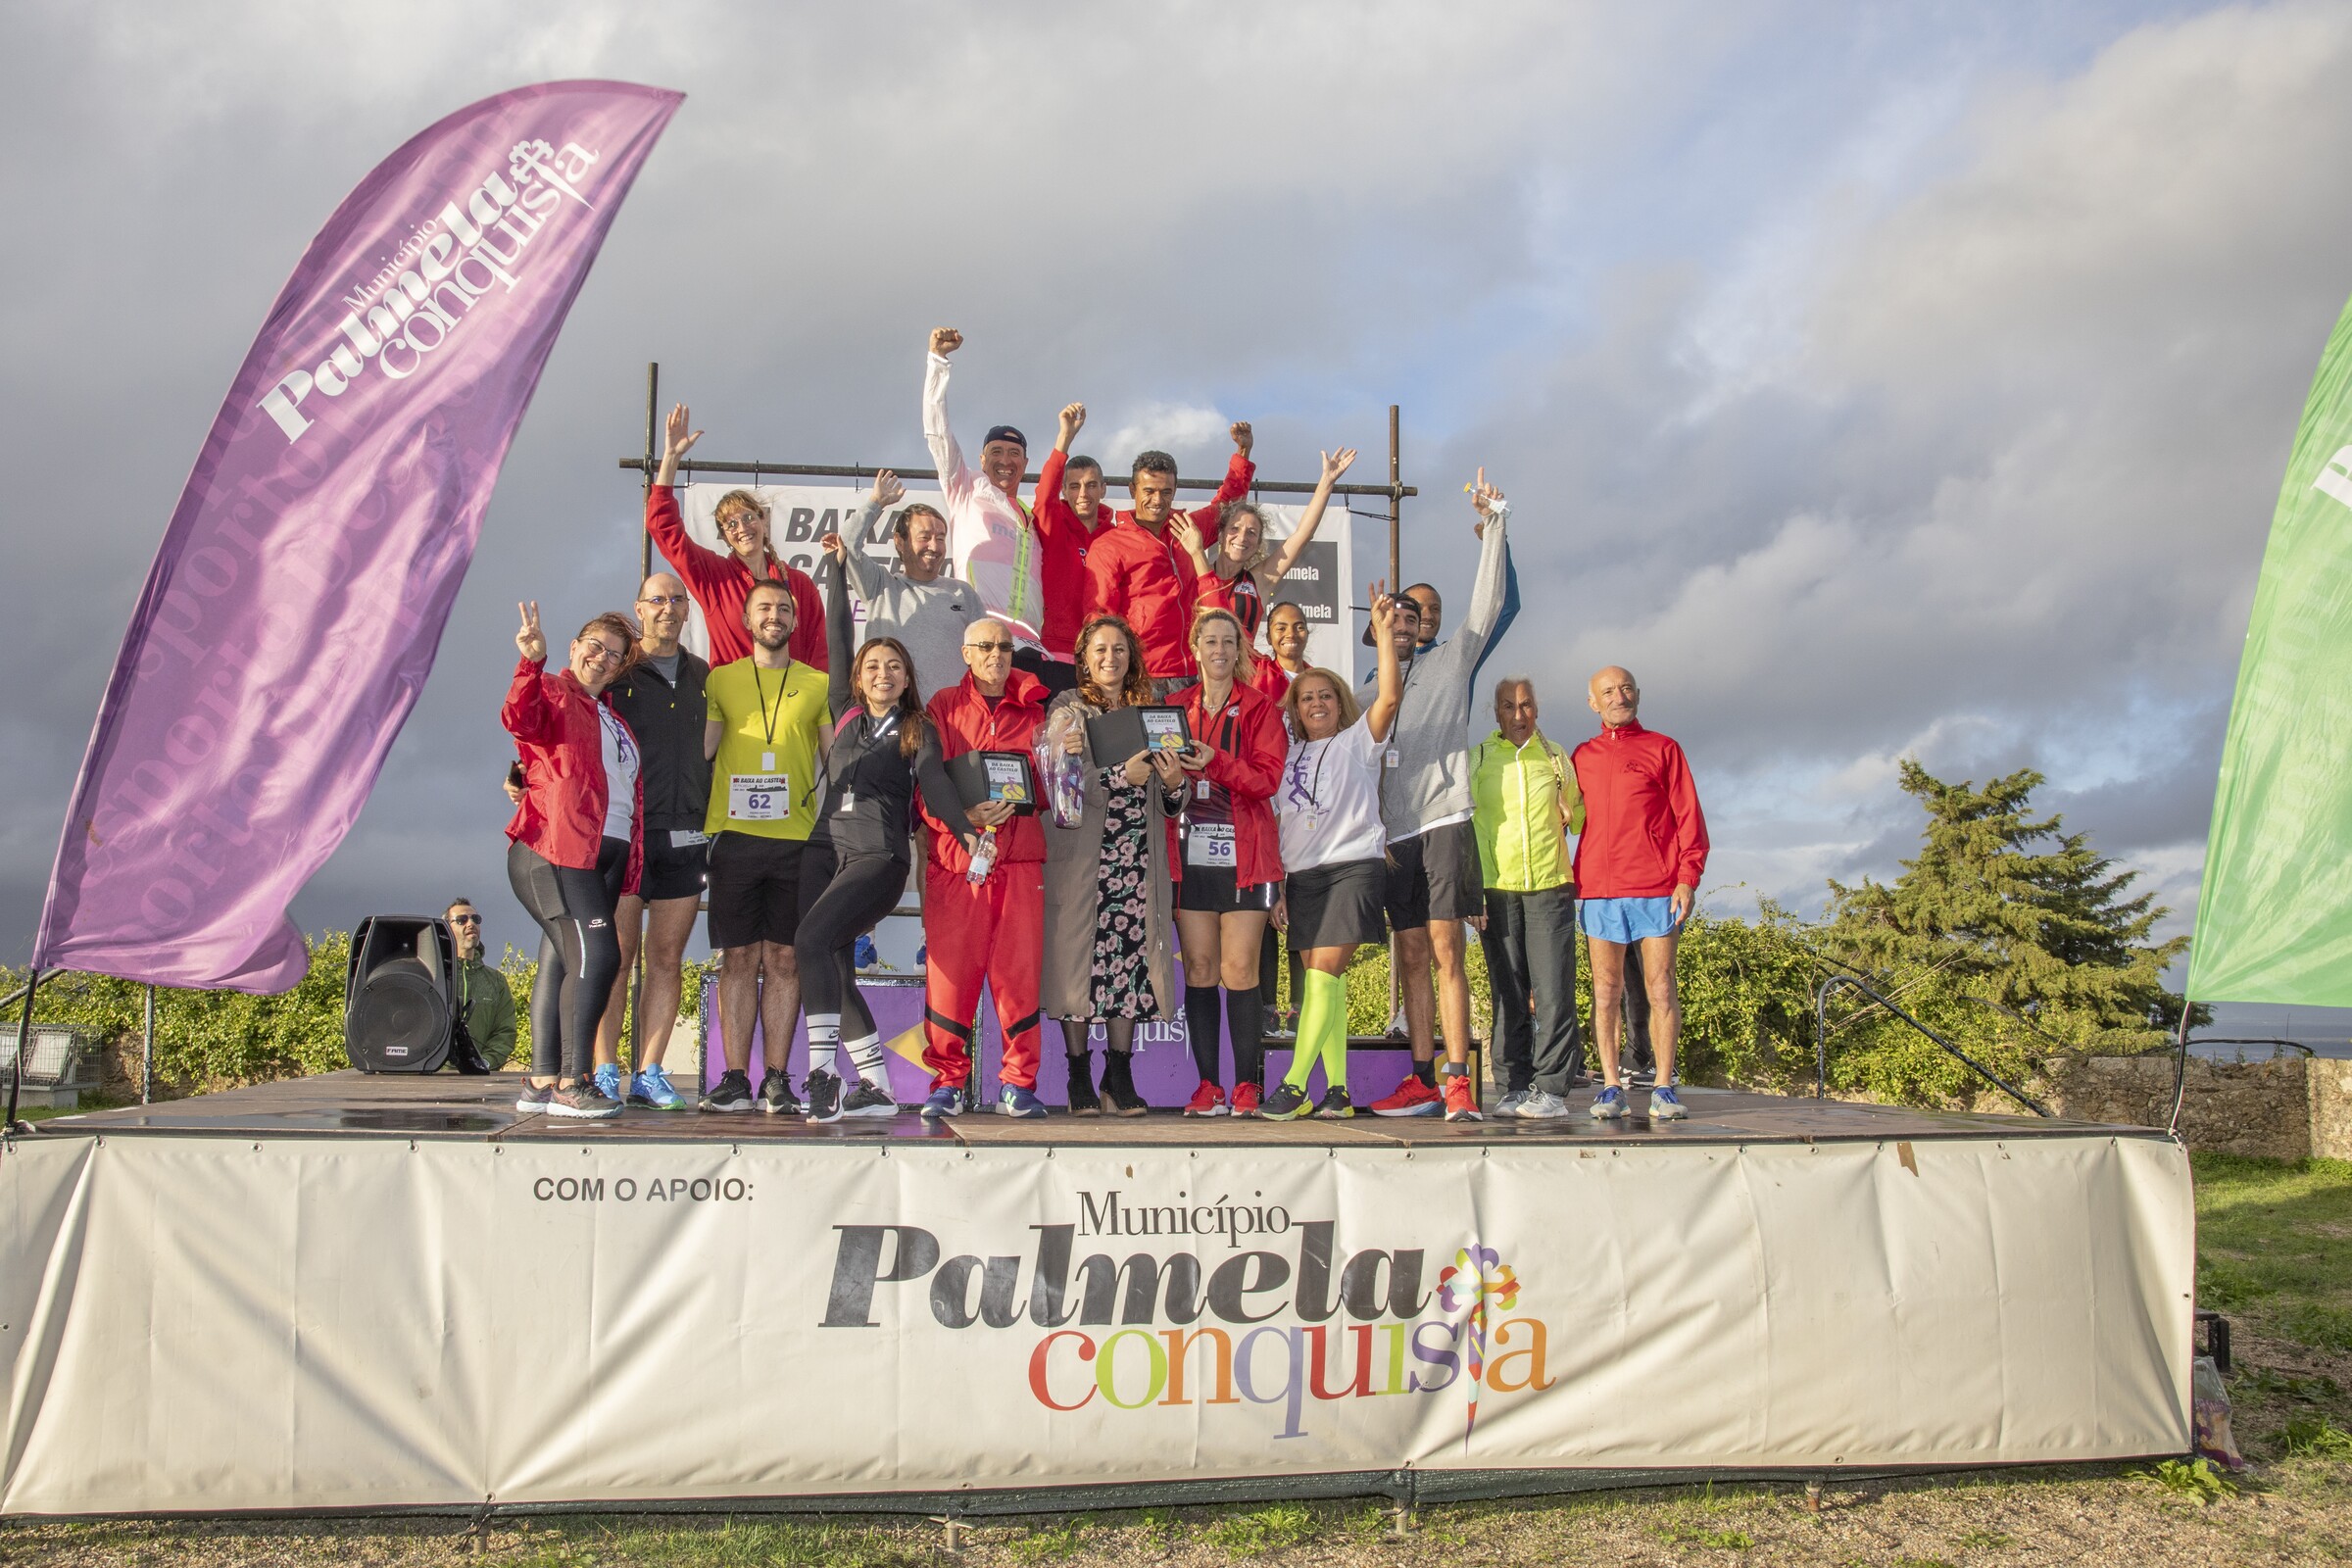 Chantal Xhervelle e Gabriel Silva venceram prova de atletismo “Da Baixa ao Castelo de Palmela”